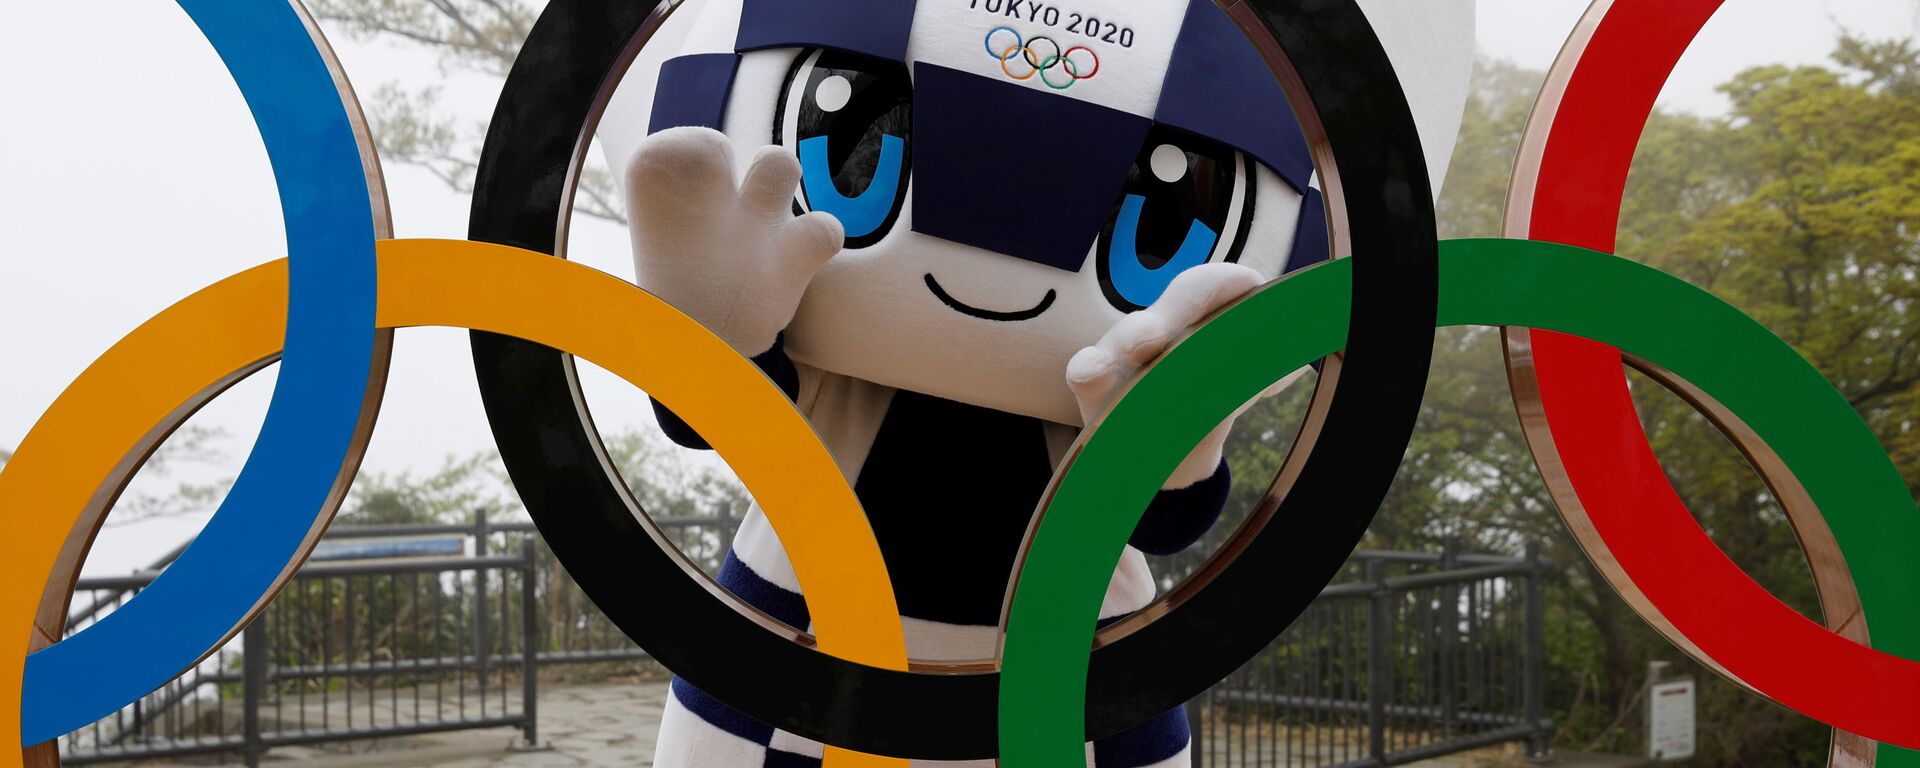 أولمبياد طوكيو 2020 - الألعاب الأولمبية والبارالمبية الصيفية - التميمة الرسمية لدورة الألعاب الأولمبية والبارالمبية طوكيو 2020: ميرايتوا، طوكيو، اليابان 14 أبريل 2021 - سبوتنيك عربي, 1920, 17.05.2021